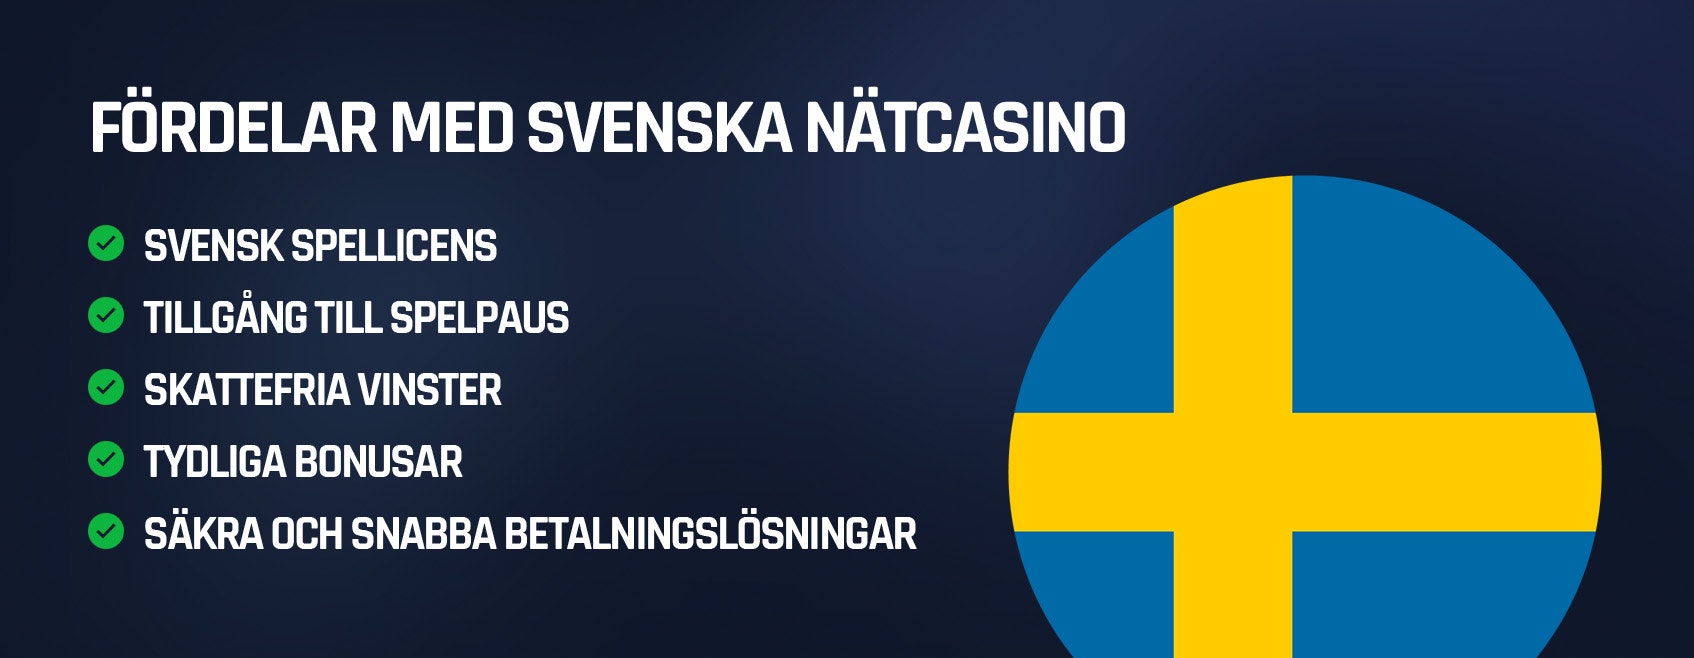 Fördelar med svenska nätcasino